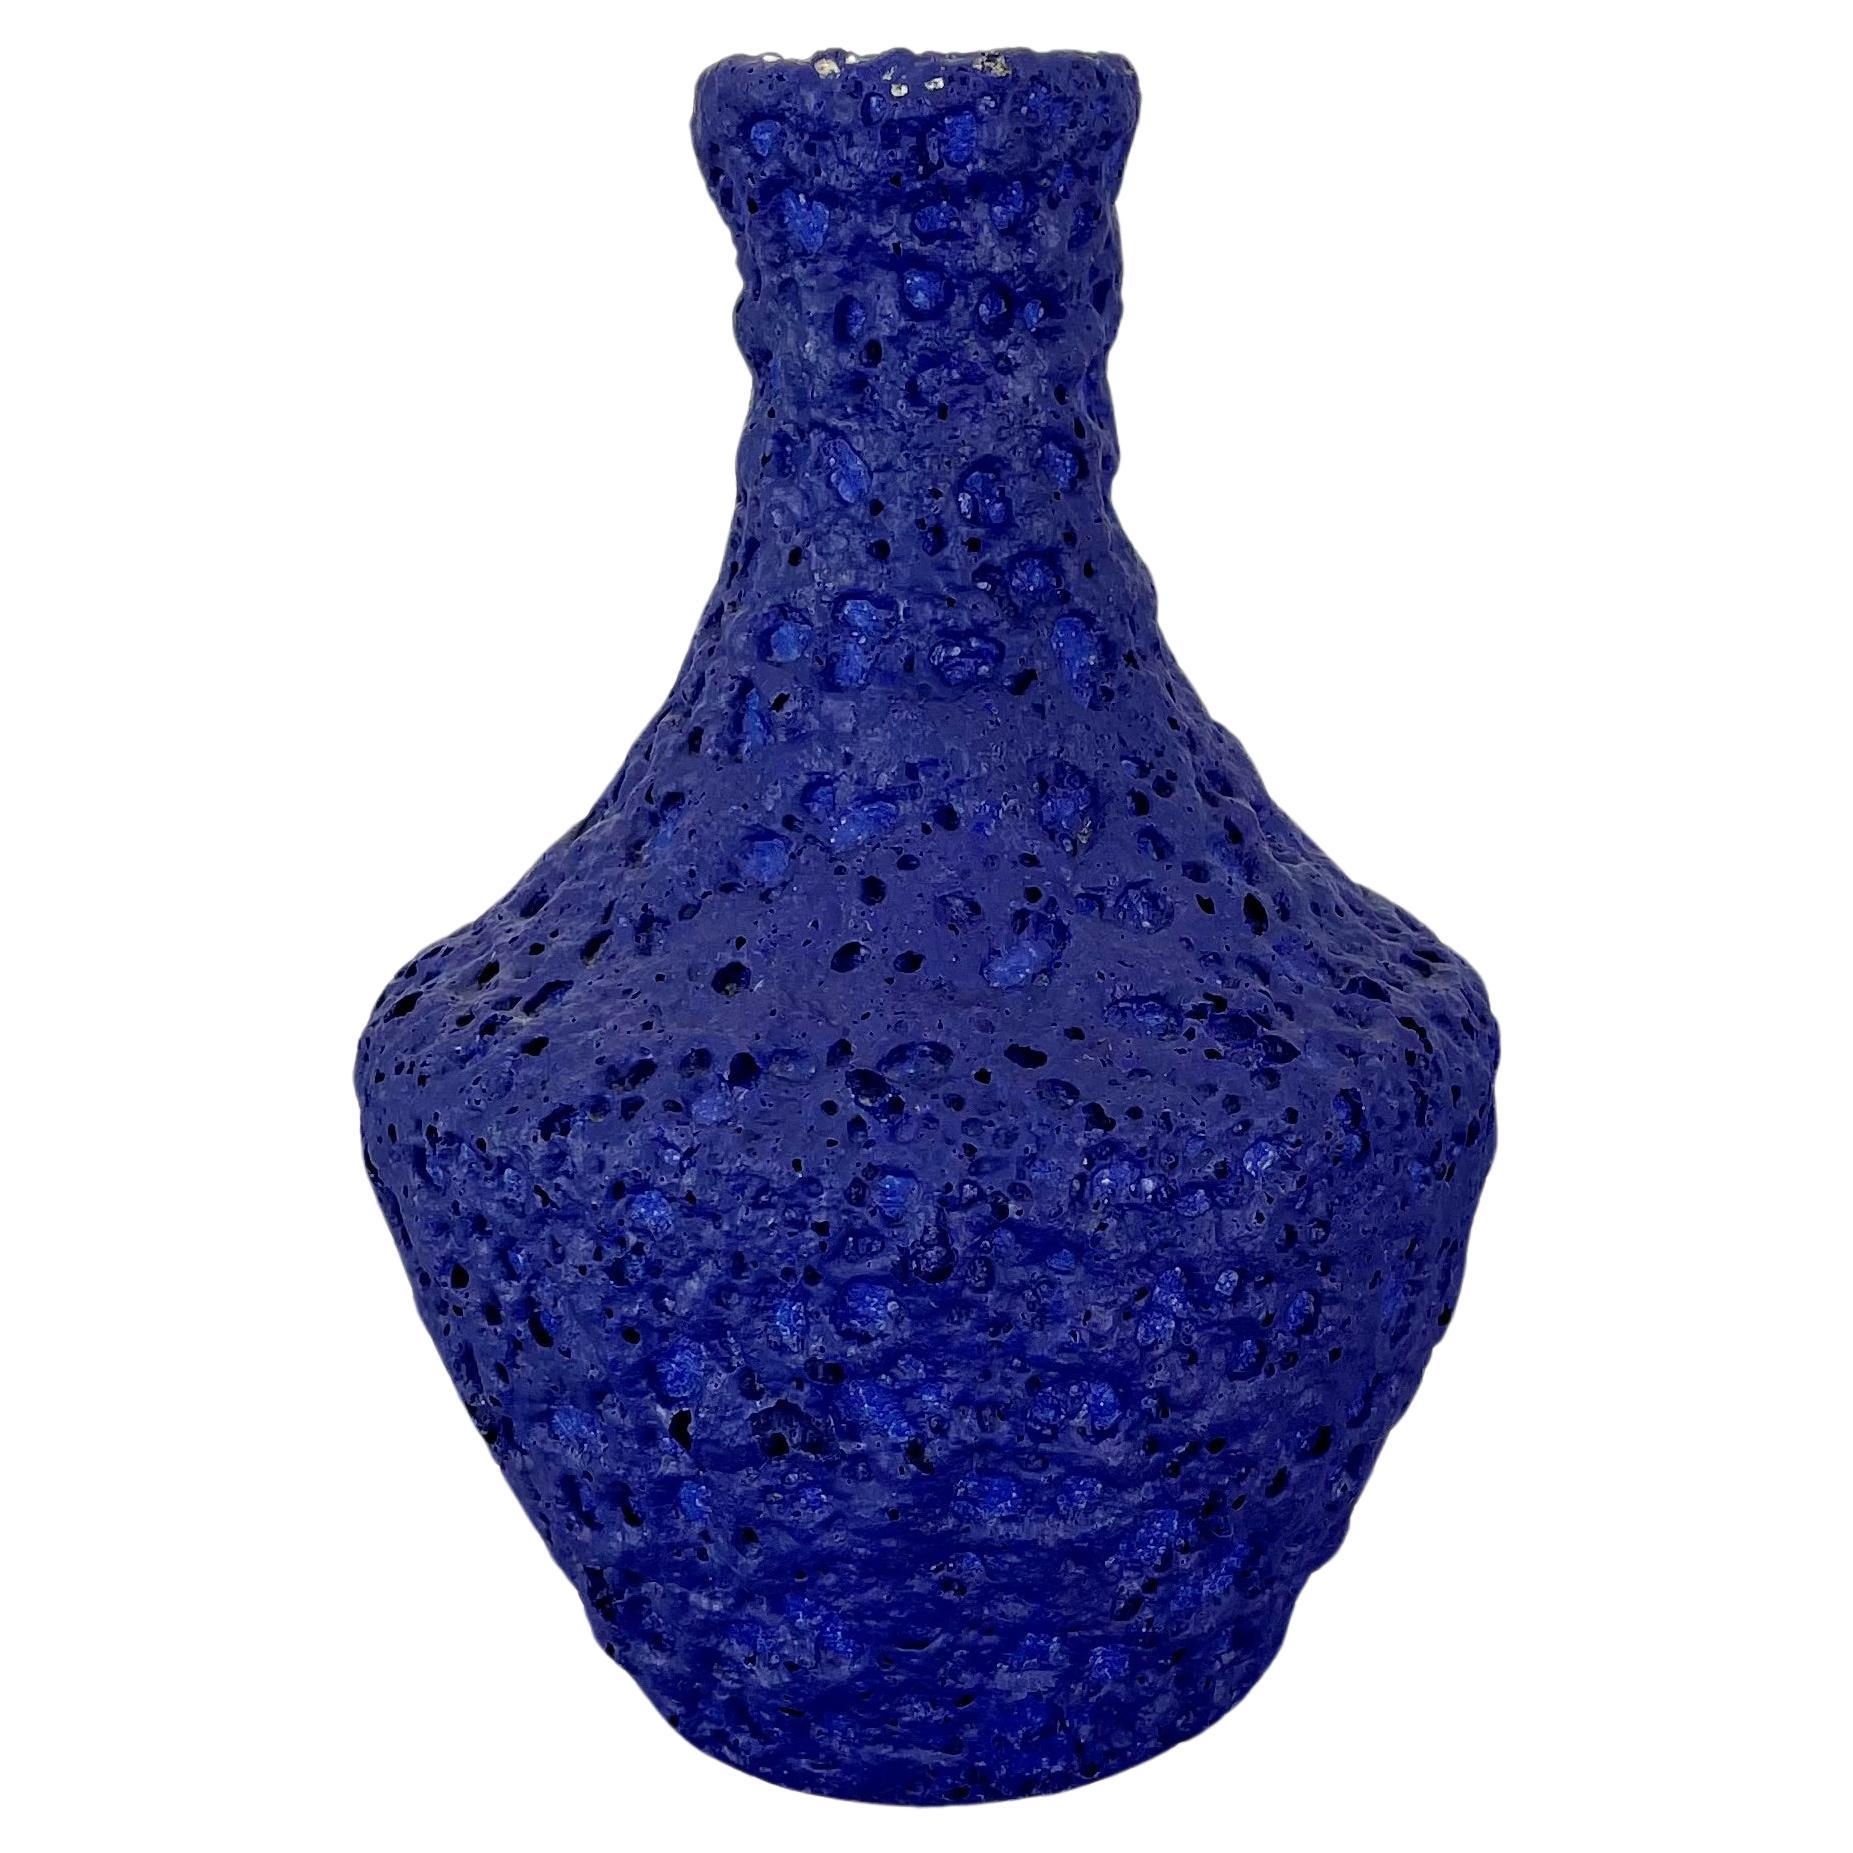 Vase brutaliste bleu en poterie colorée abstraite par Silberdistel, Allemagne de l'Ouest, années 1950